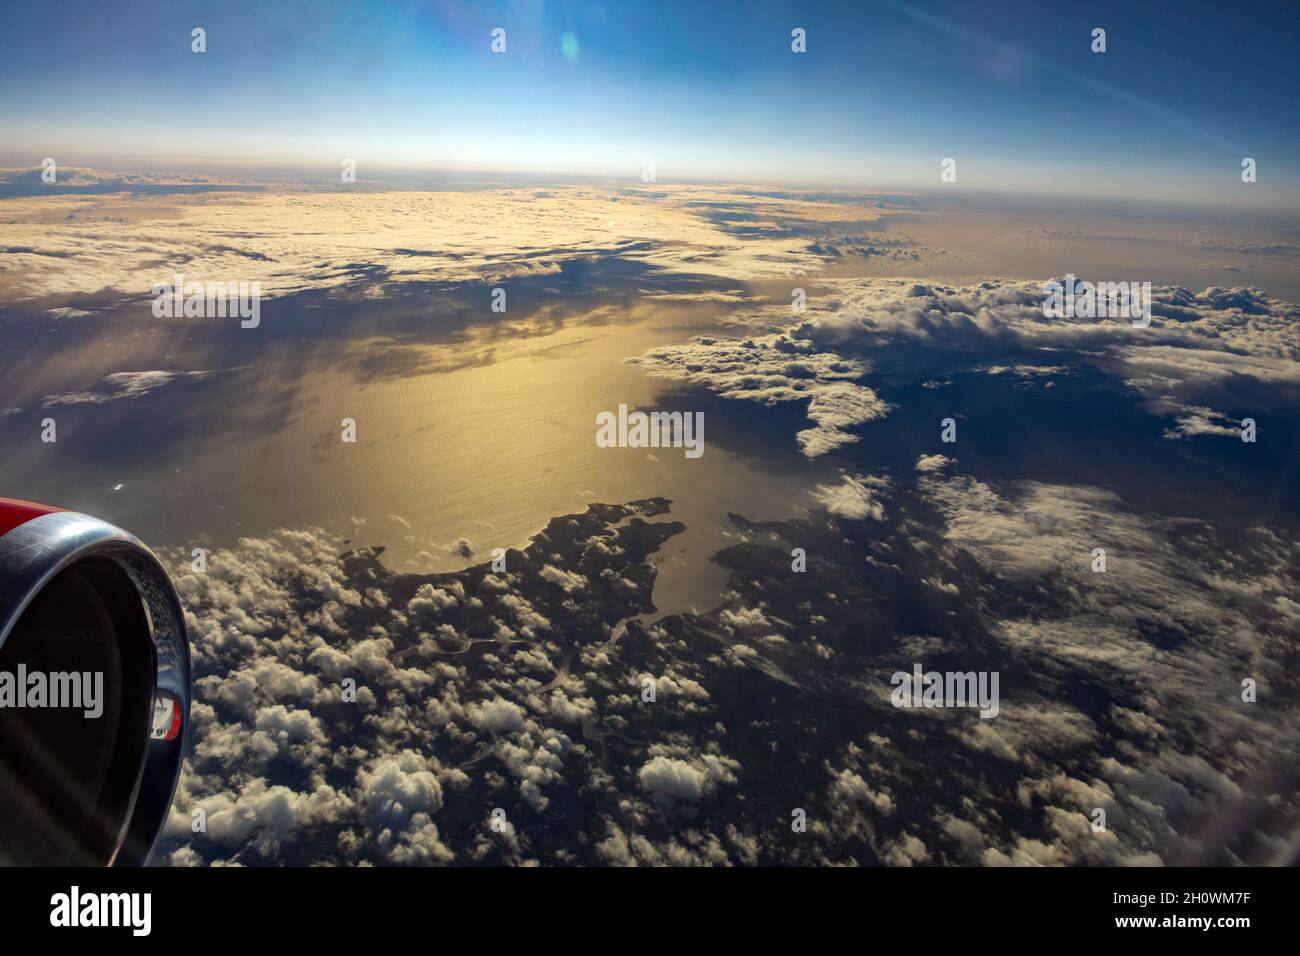 vue de l'avion passager à environ 36 000feet / 11 000 mètres au-dessus du niveau de la mer Banque D'Images